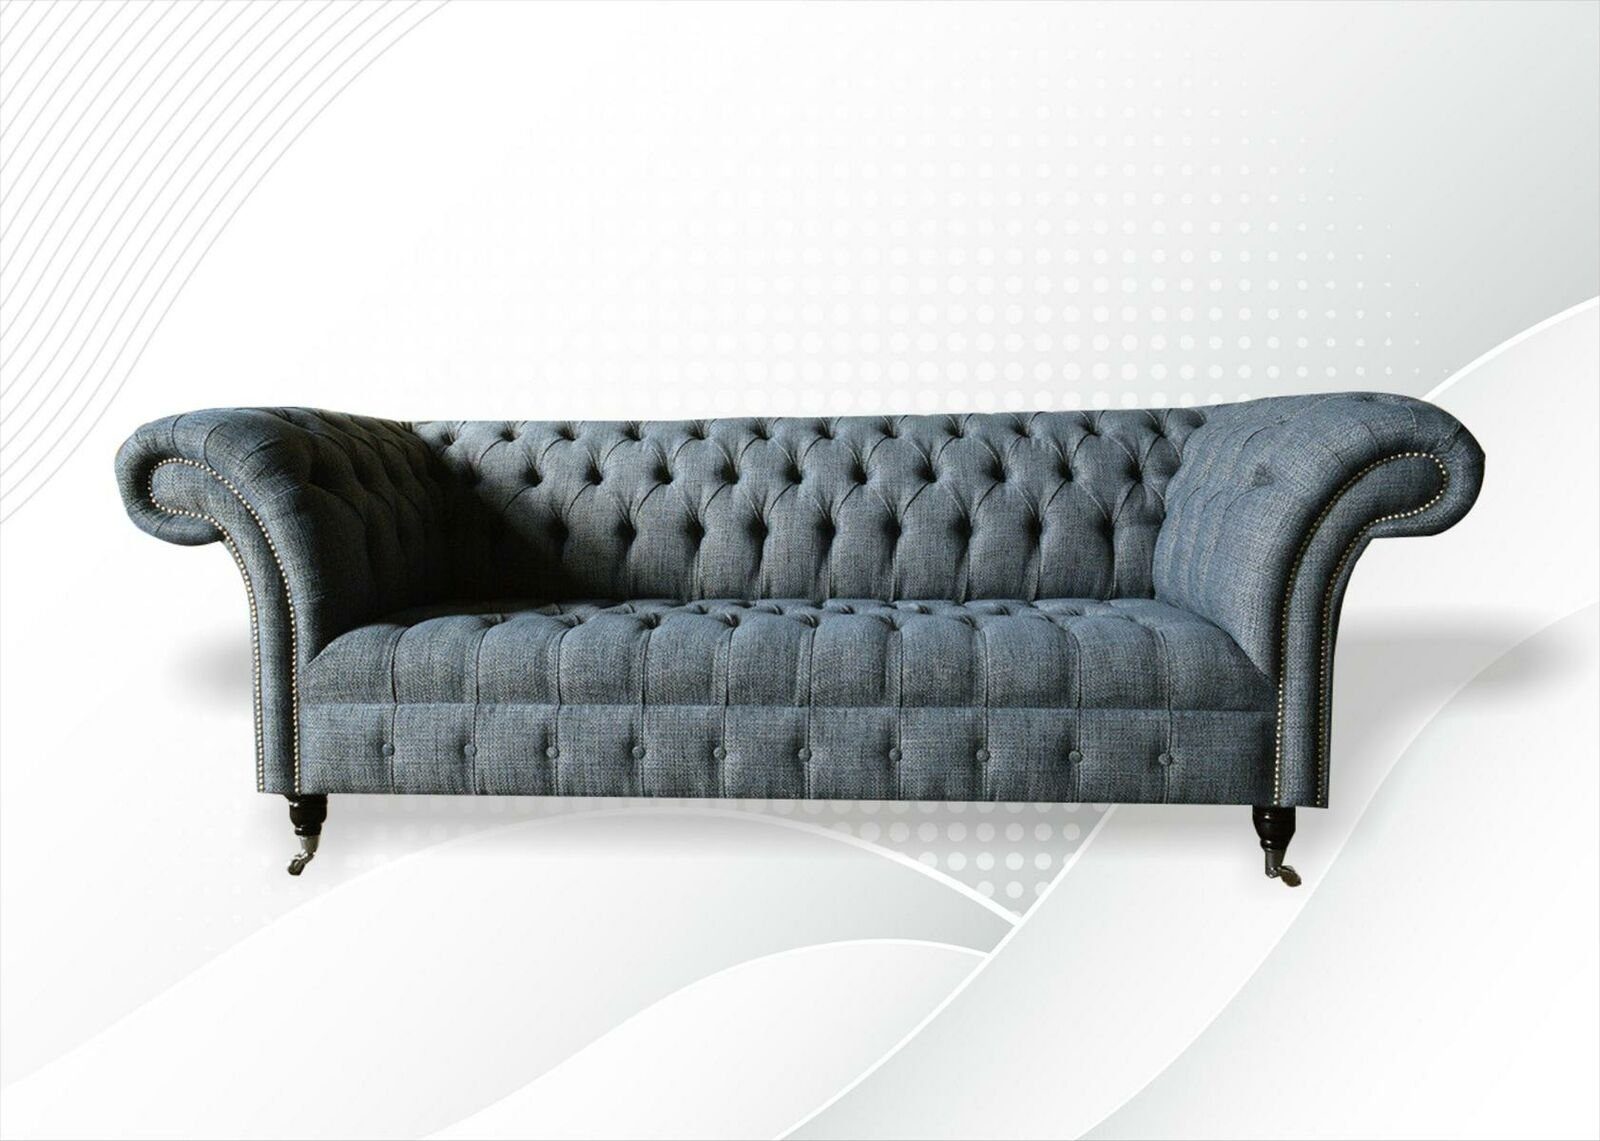 JVmoebel Chesterfield-Sofa Luxus Moderner Dreisitzer 3-er Chesterfield Möbel Design Neu, Made in Europe